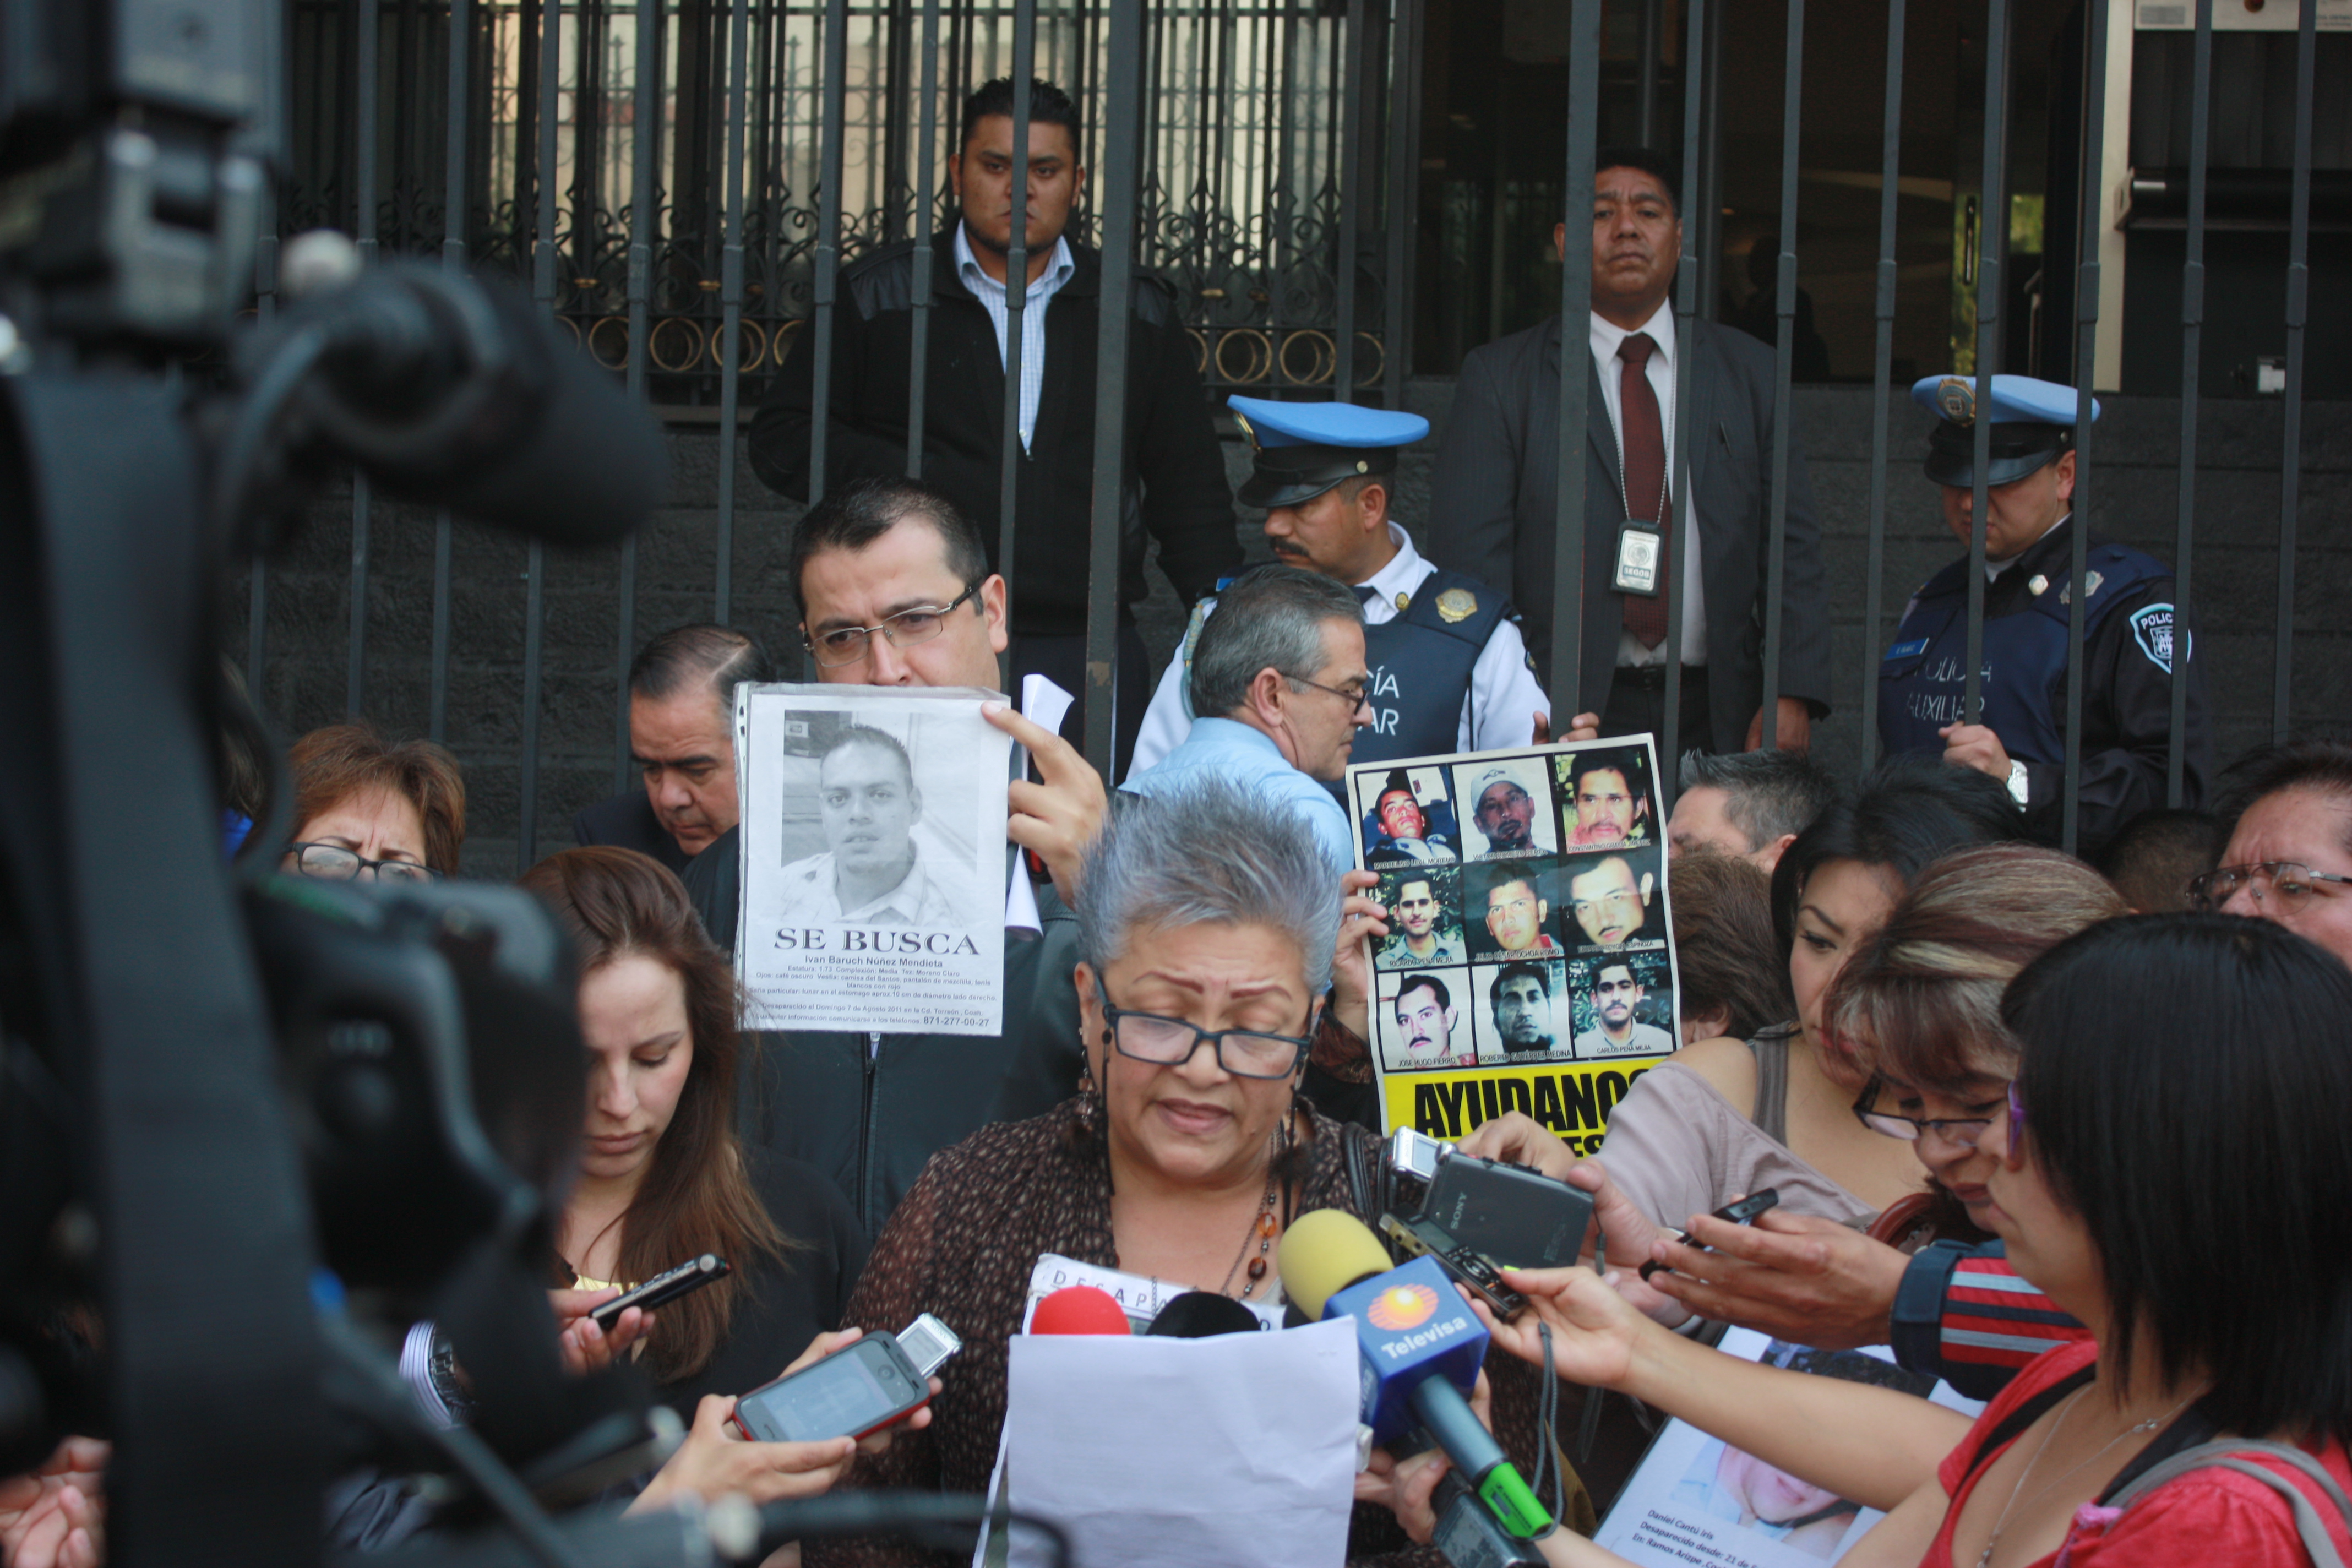 Cancela Gobernación diálogo con víctimas de desaparecidos por “agenda apretada”